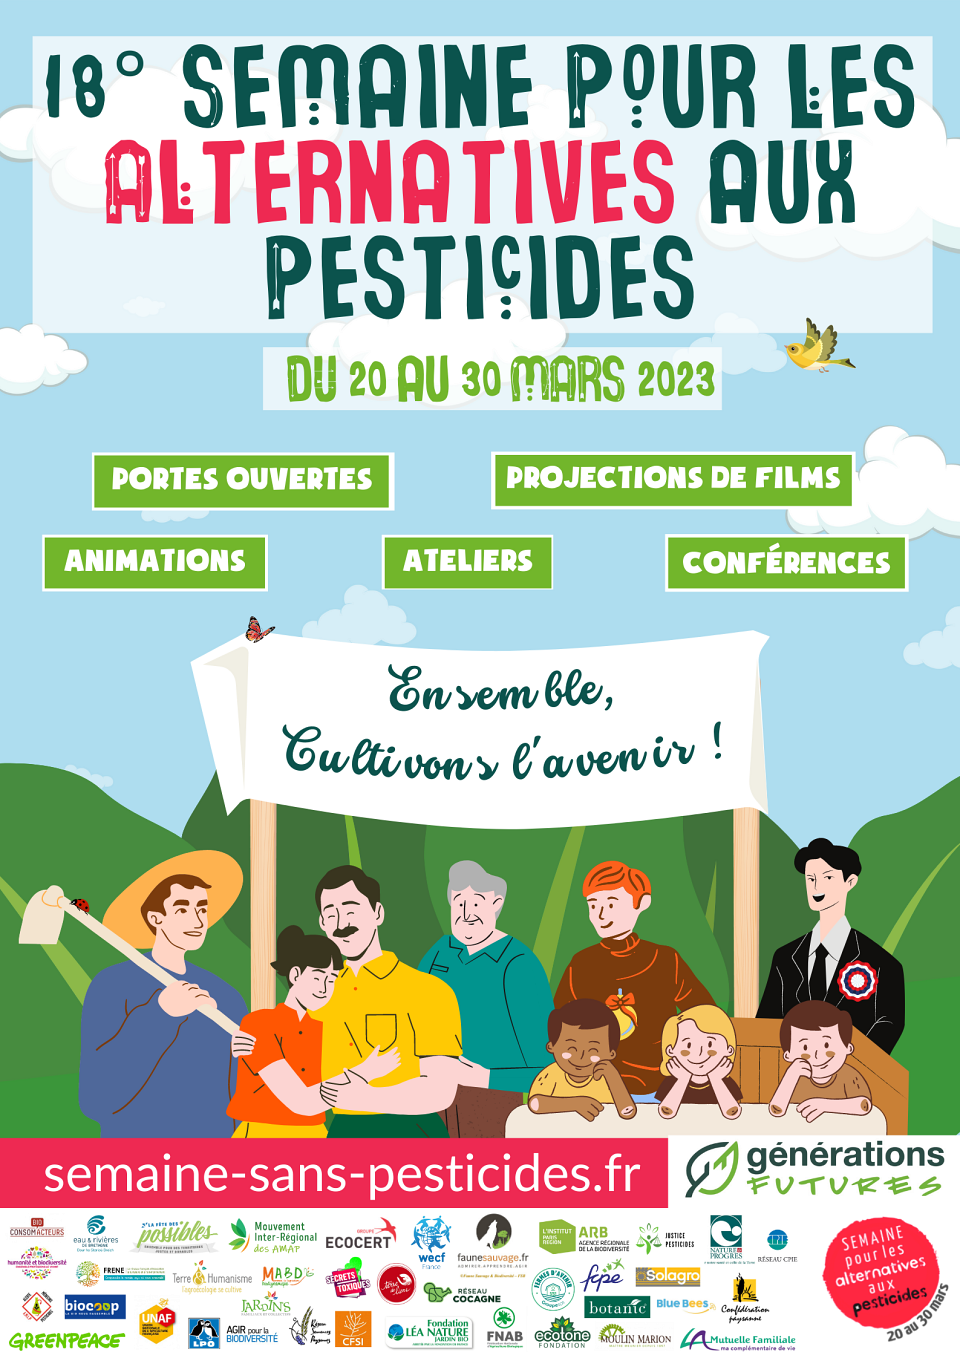 Affiche officielle de la Semaine pour les alternatives aux pesticides